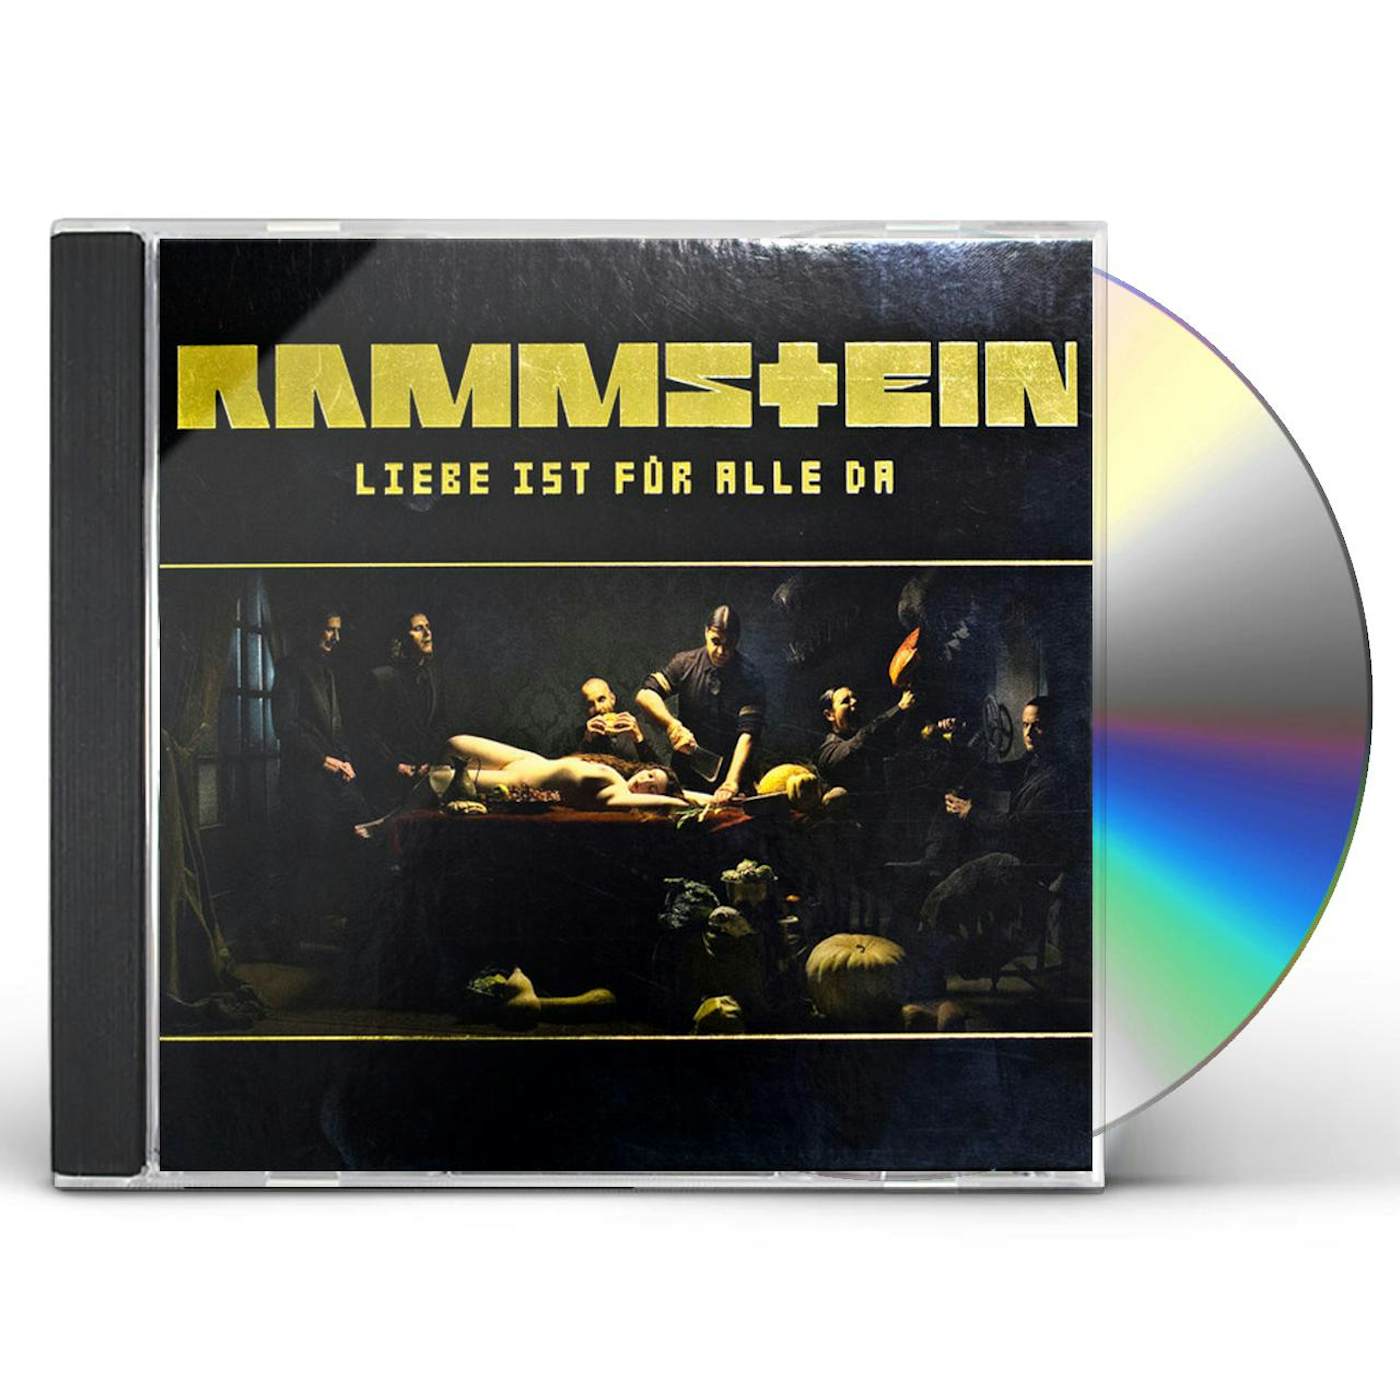 Rammstein LIEBE IST FUR ALLE DA CD $22.49$19.99